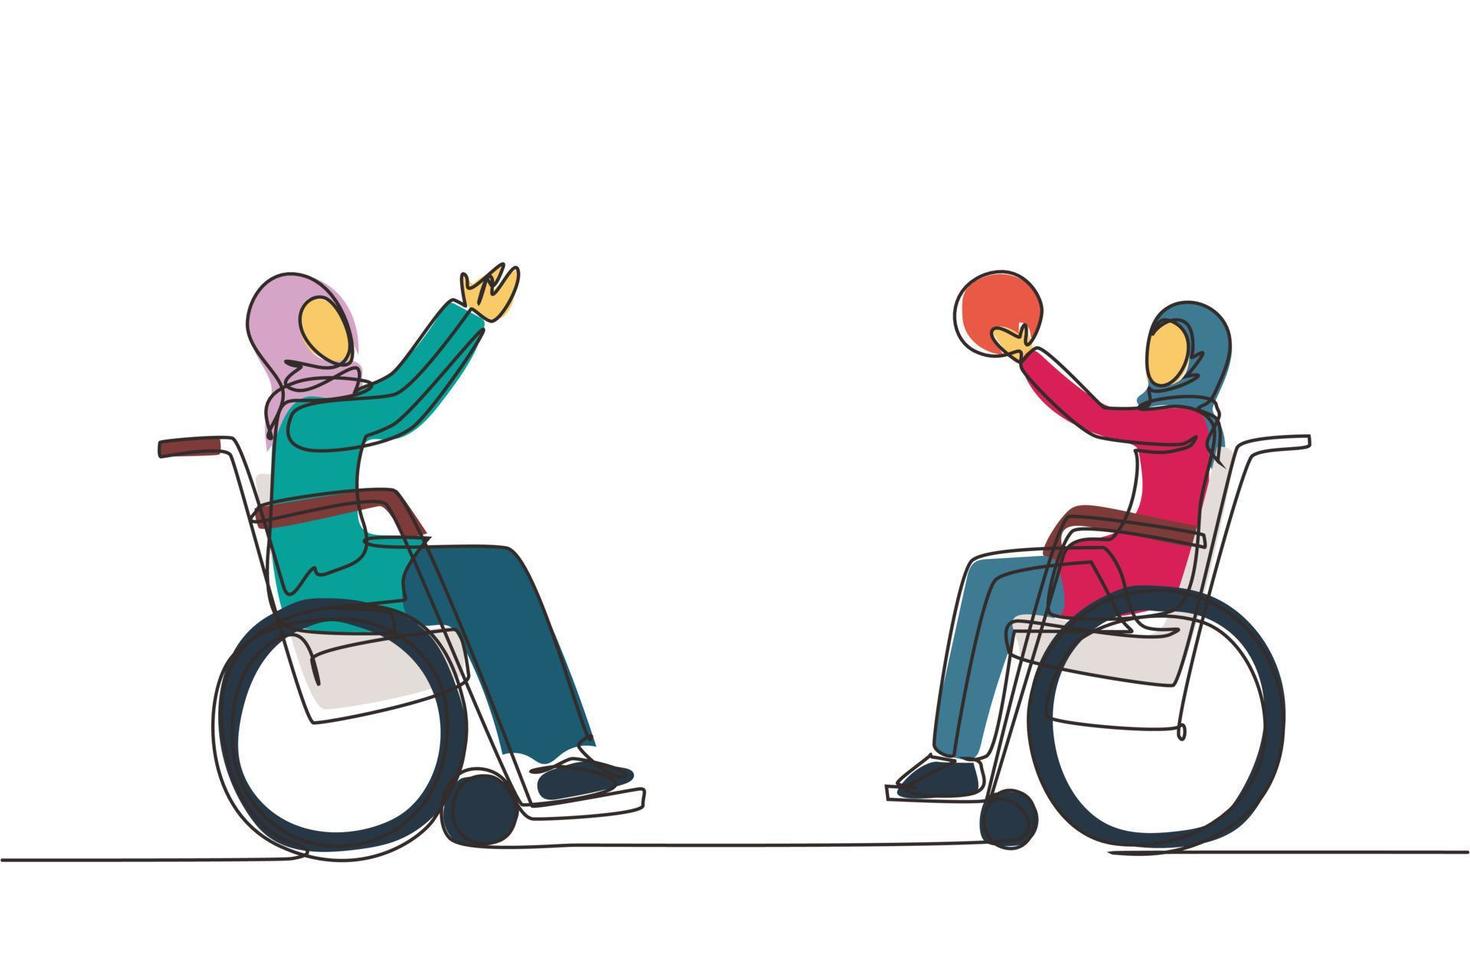 continu één lijntekening vrolijke gehandicapte jonge arabische vrouw in een rolstoel die basketbal speelt. concept van adaptieve sporten voor mensen met een handicap. enkele lijn tekenen ontwerp vector grafische afbeelding